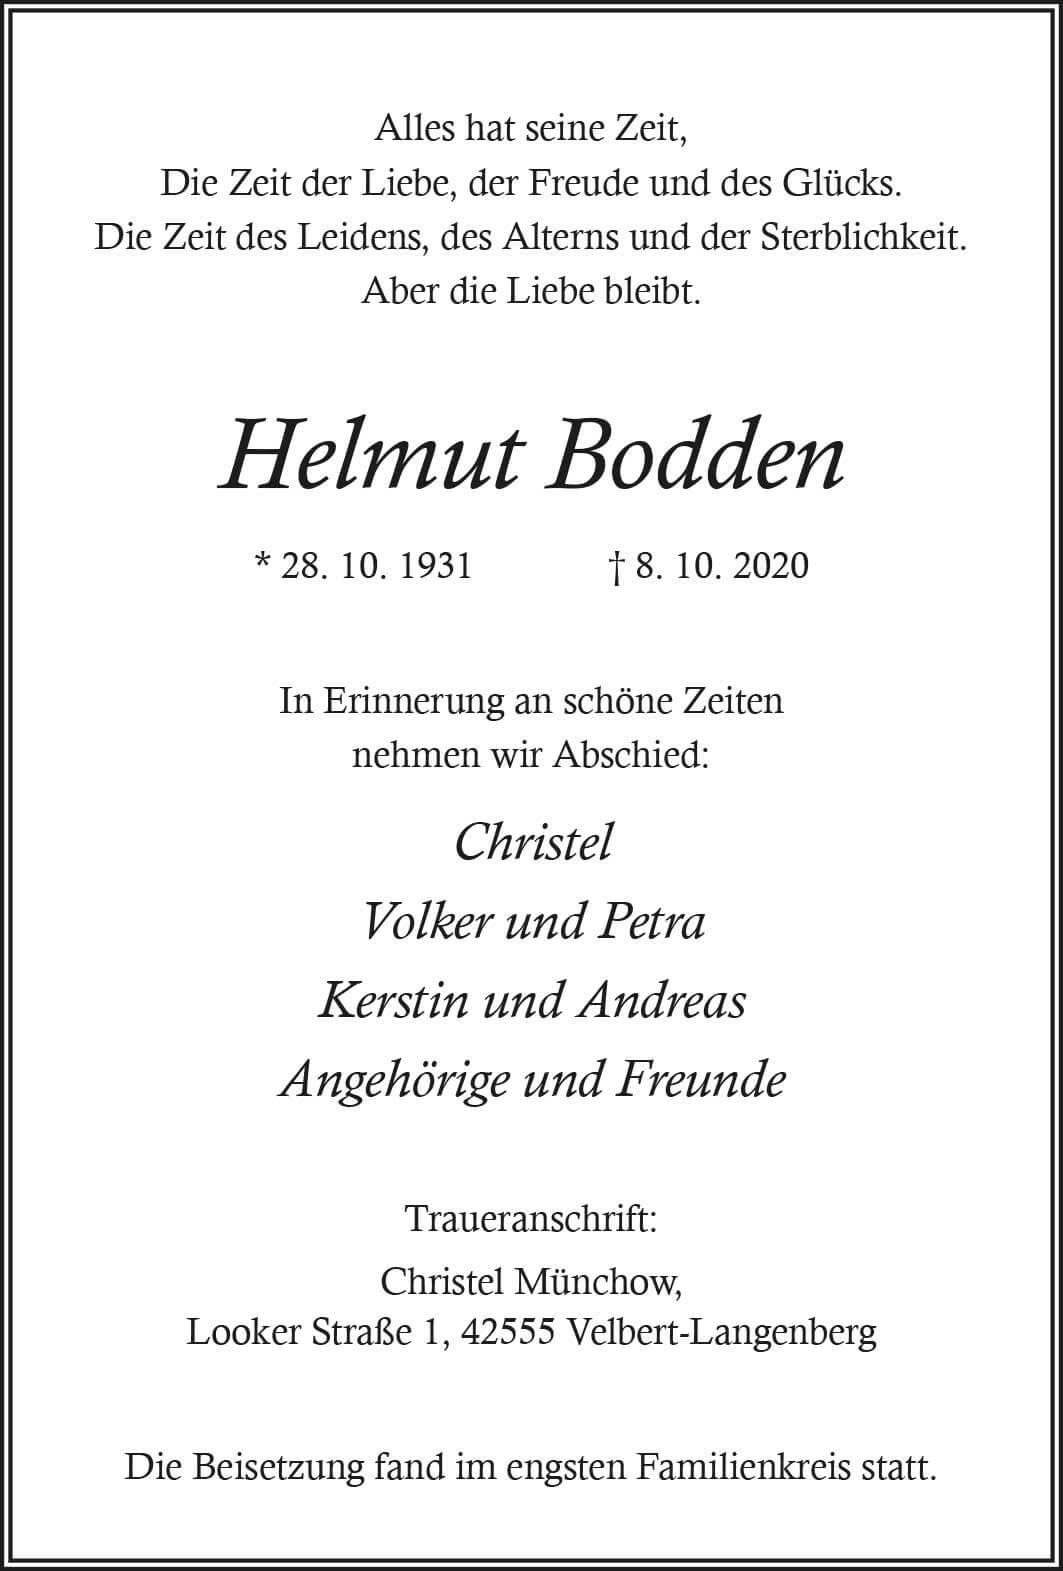 31.10.2020_Bodden-Helmut.jpg